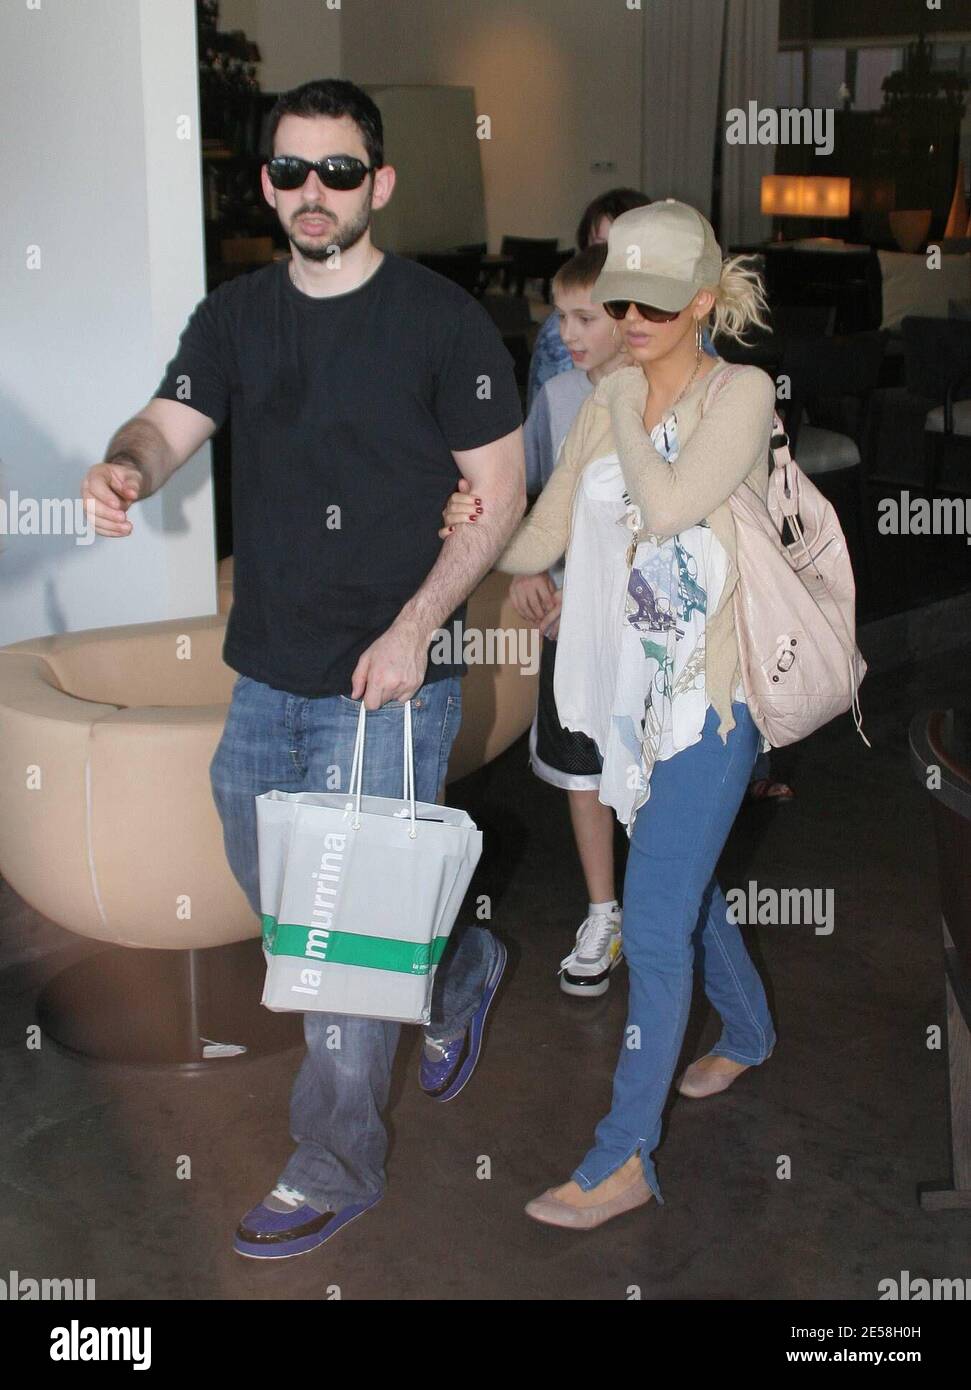 La embarazada Christina Aguilera junto con el marido Jordan Bratman, su  madre Shelly y su hermano menor Michael, compran muebles en la tienda de  diseño Diva. La sala de exposición tiene una